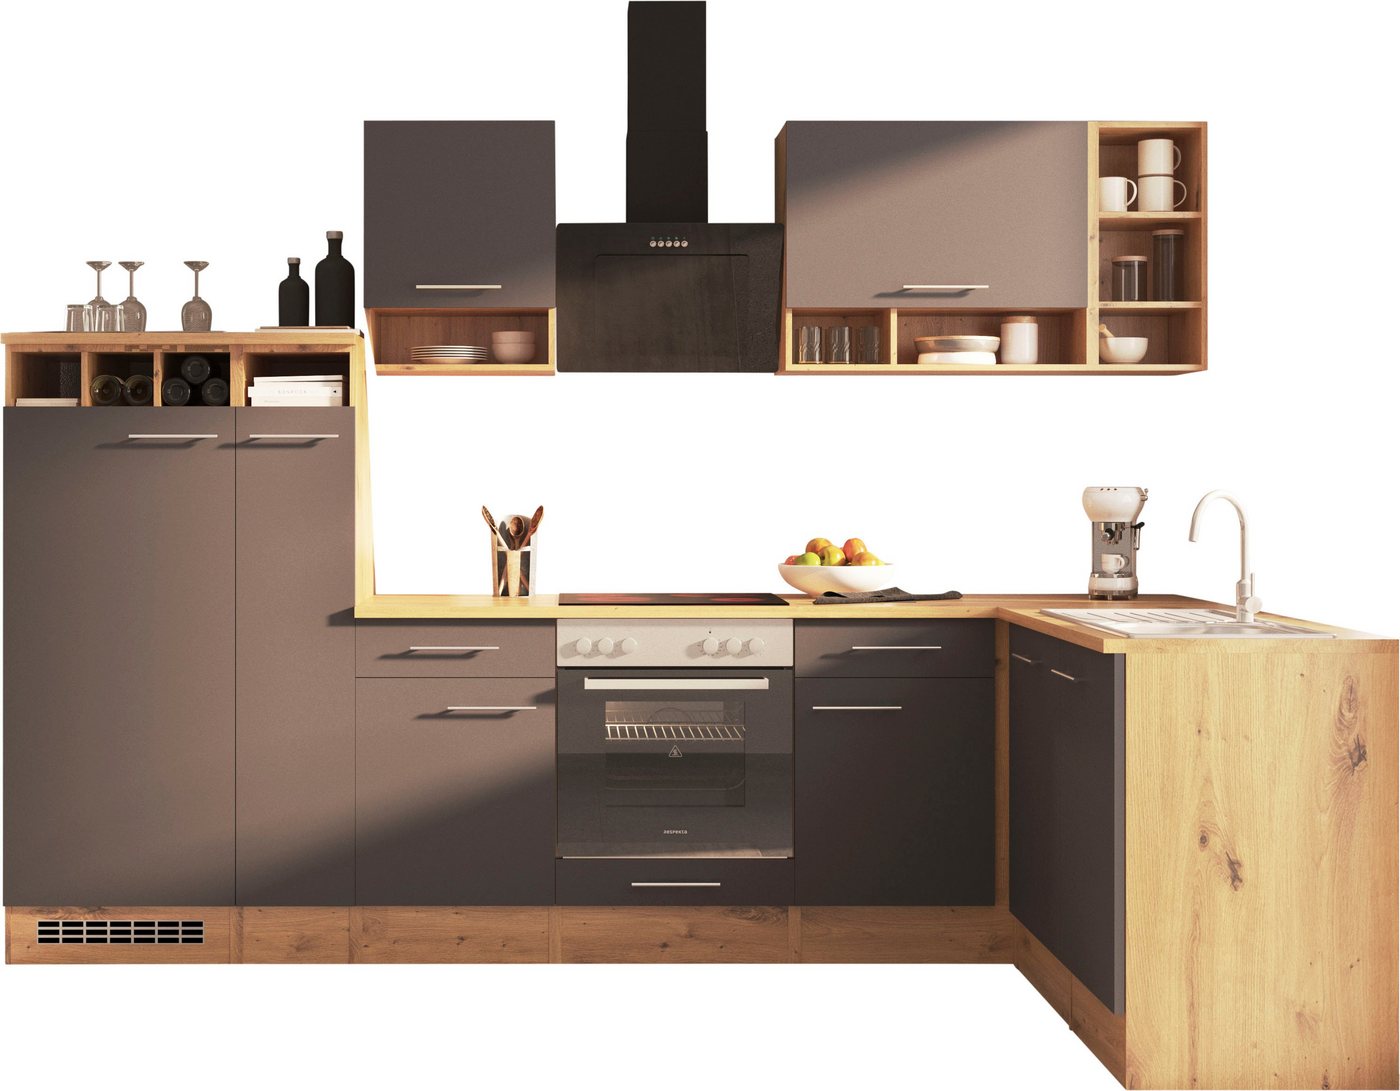 RESPEKTA Küche Hilde, Breite 310 cm, wechselseitig aufbaubar, exkl. Konfiguration für OTTO von RESPEKTA